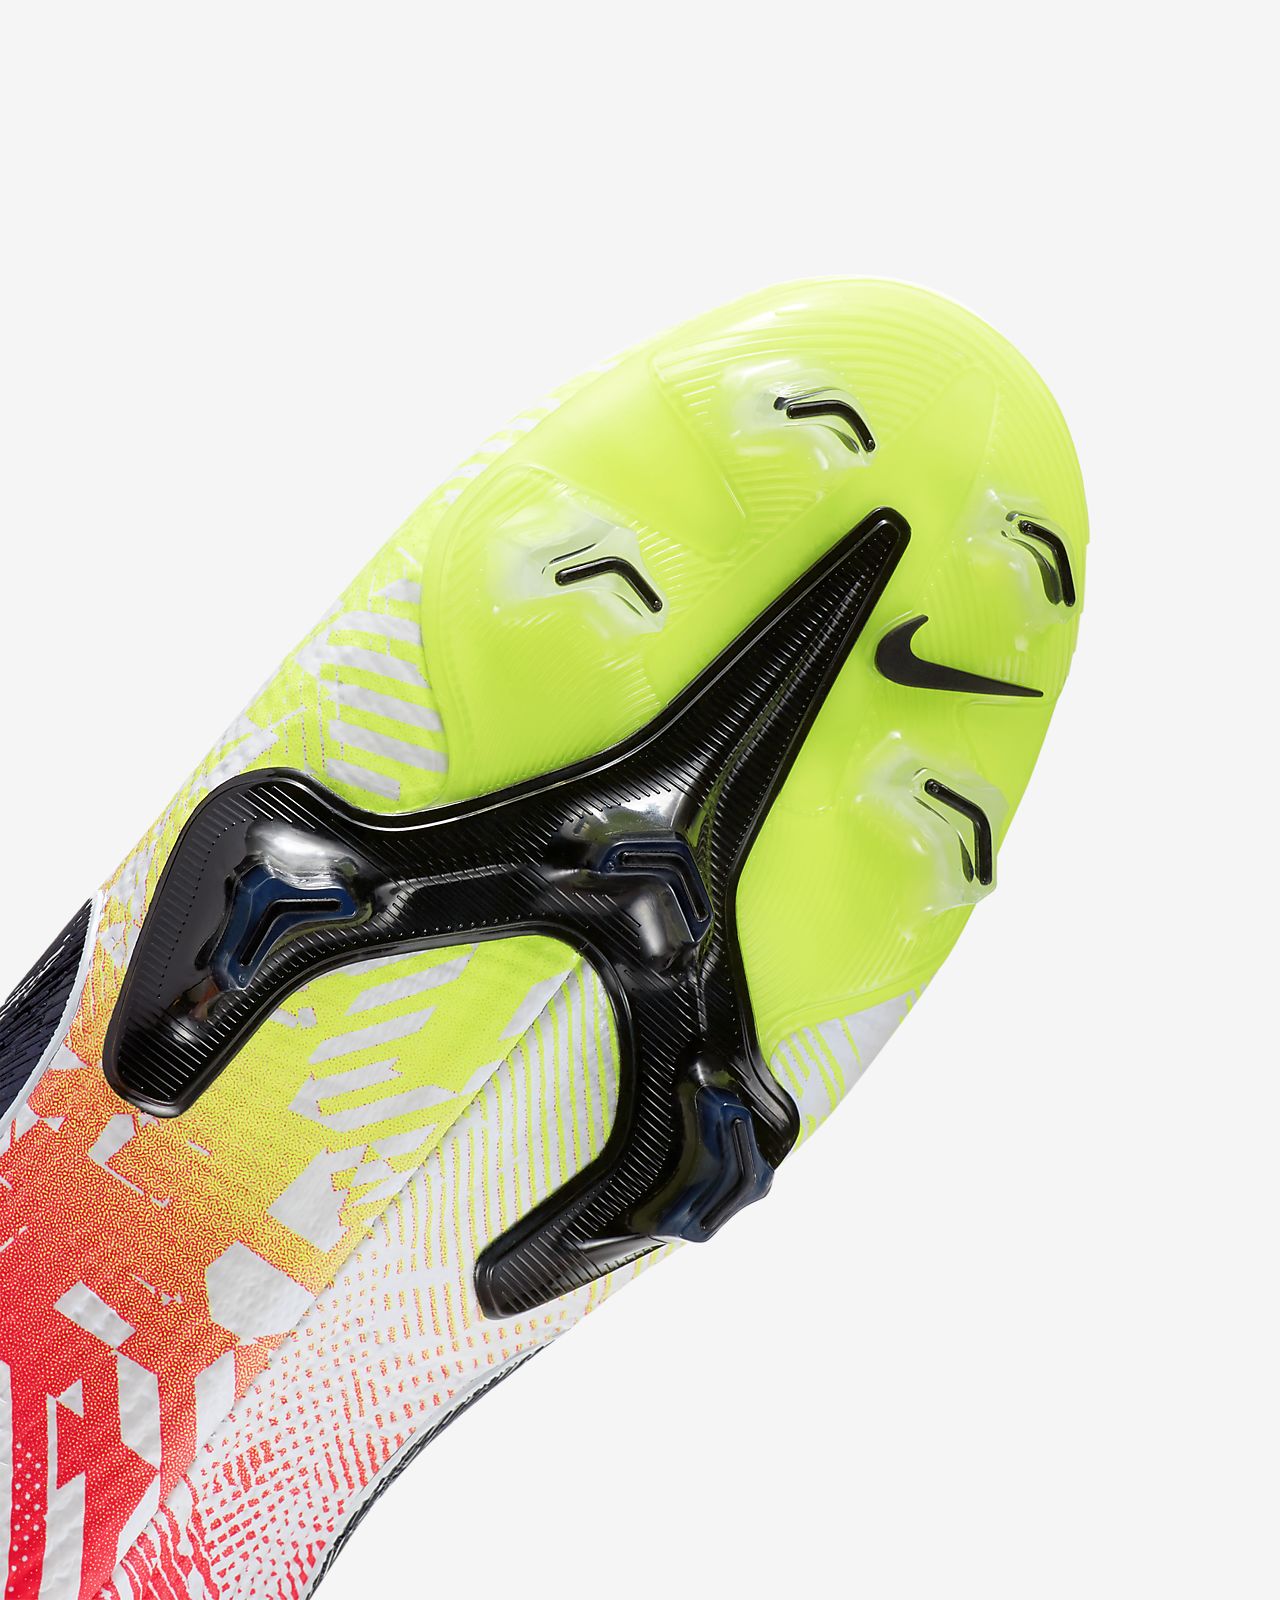 Nike Neymar Cleats Neymar Shoes SoccerPro